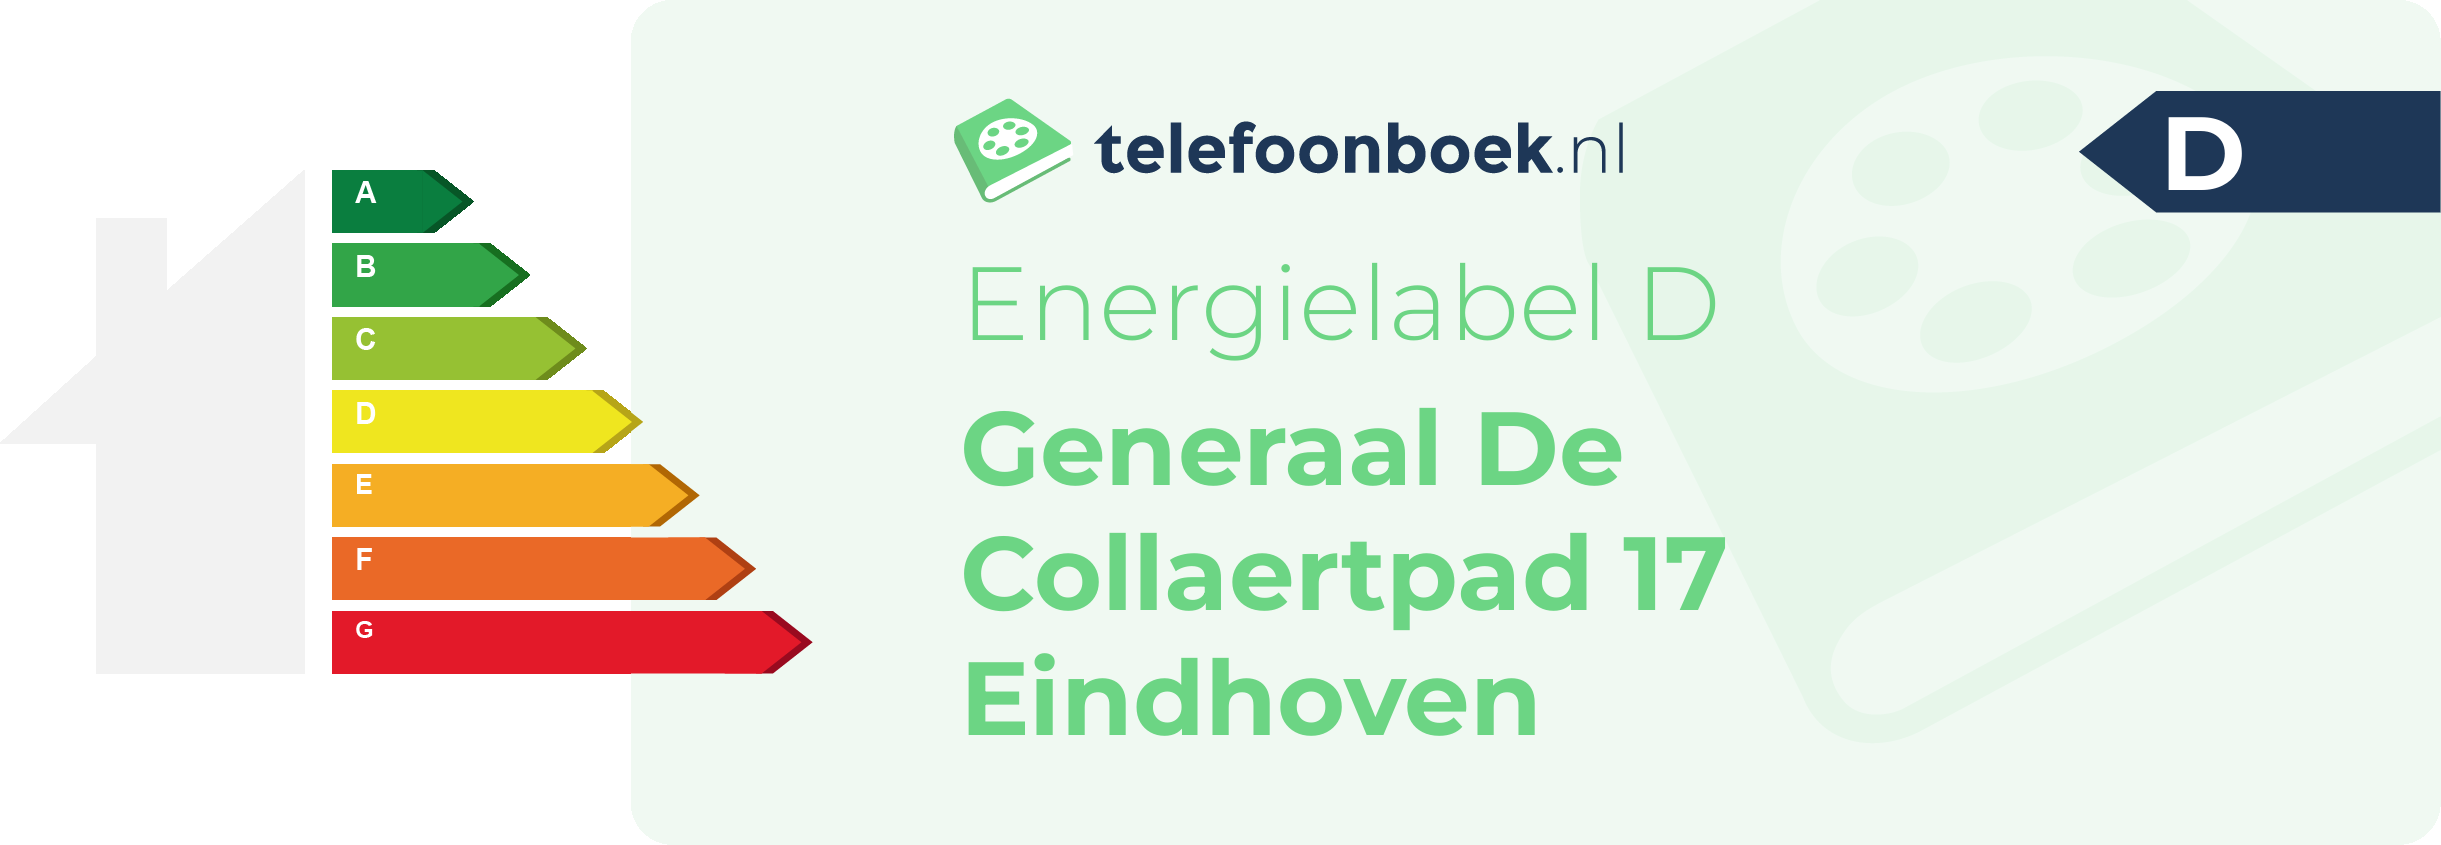 Energielabel Generaal De Collaertpad 17 Eindhoven